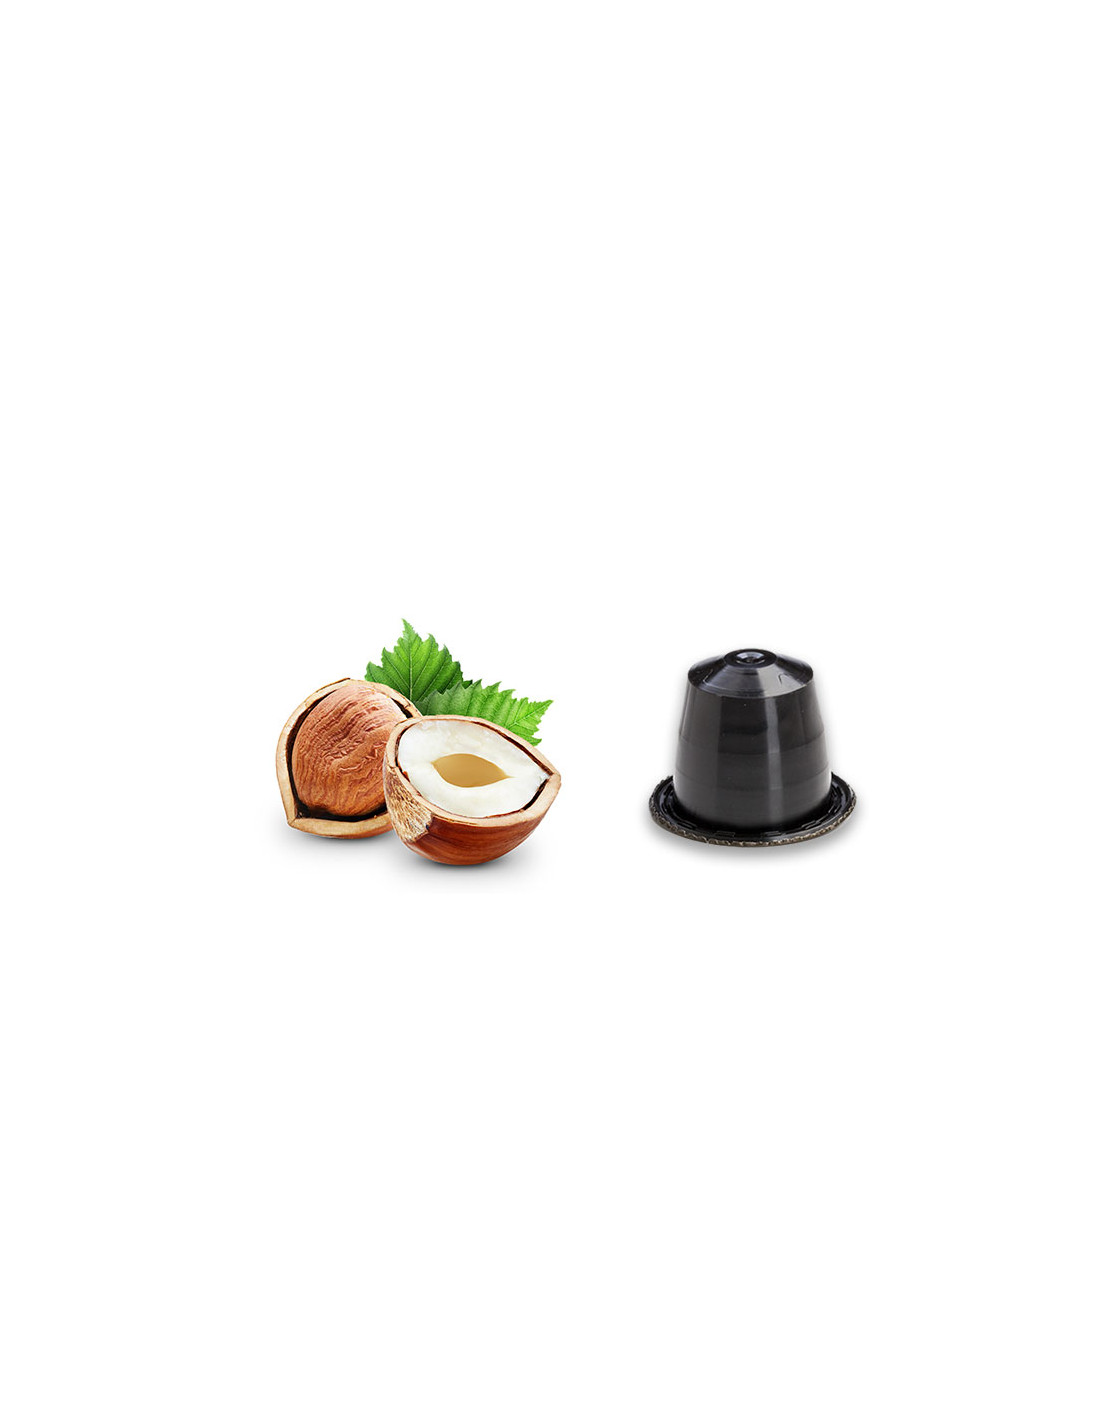 120 capsule Tuttocapsule Nocciolino compatibili con Nespresso ®*